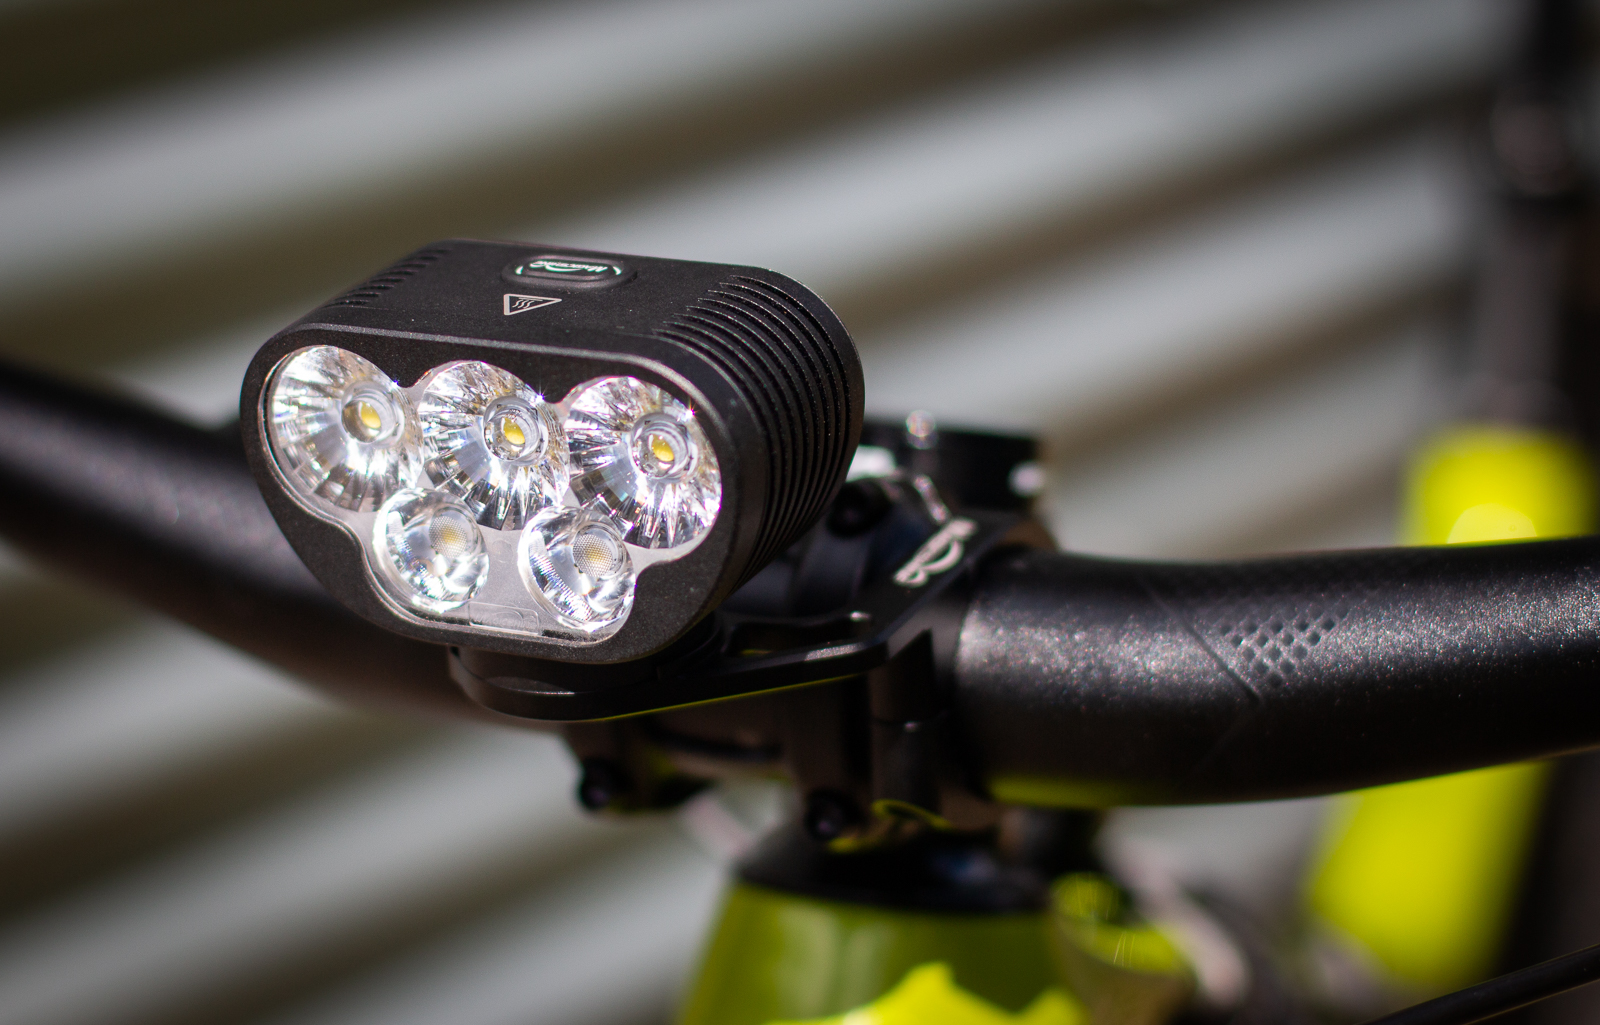 magicshine bike light reviews, magicshine bike light for s…